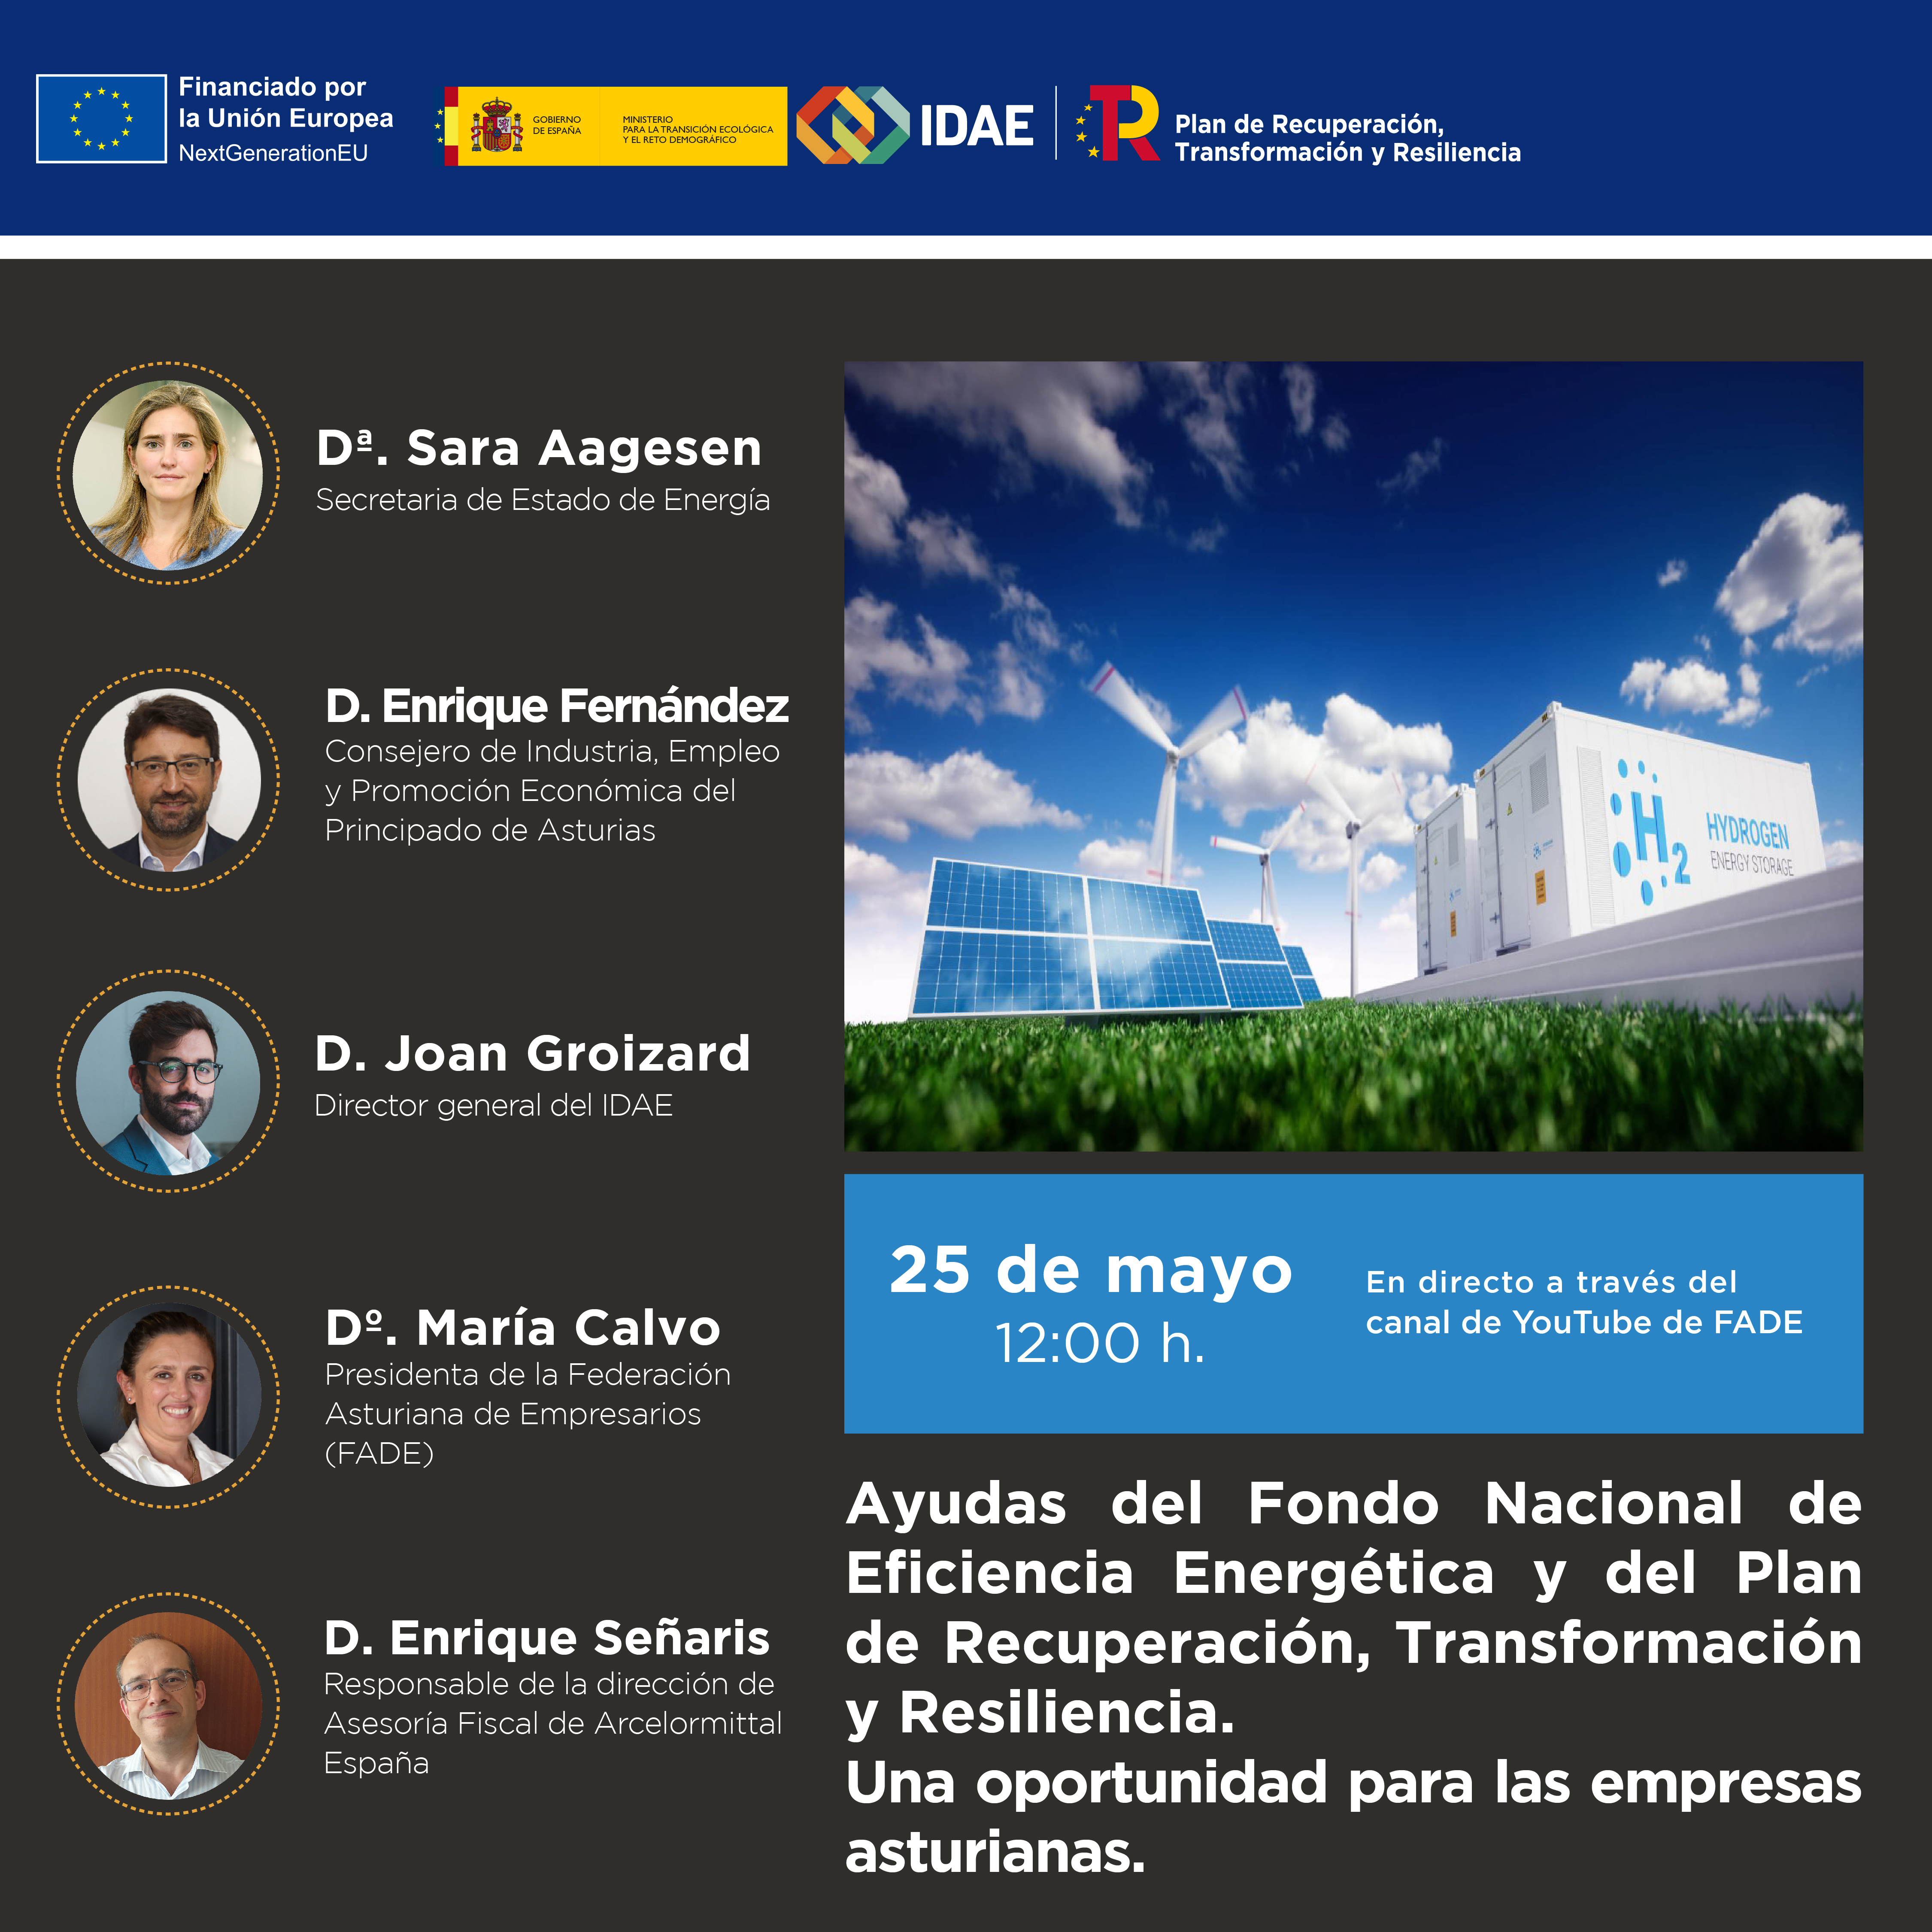 Ayudas del Fondo Nacional de Eficiencia Energética y del Plan de Recuperación, Transformación y Resiliencia. Una oportunidad para las empresas asturianas